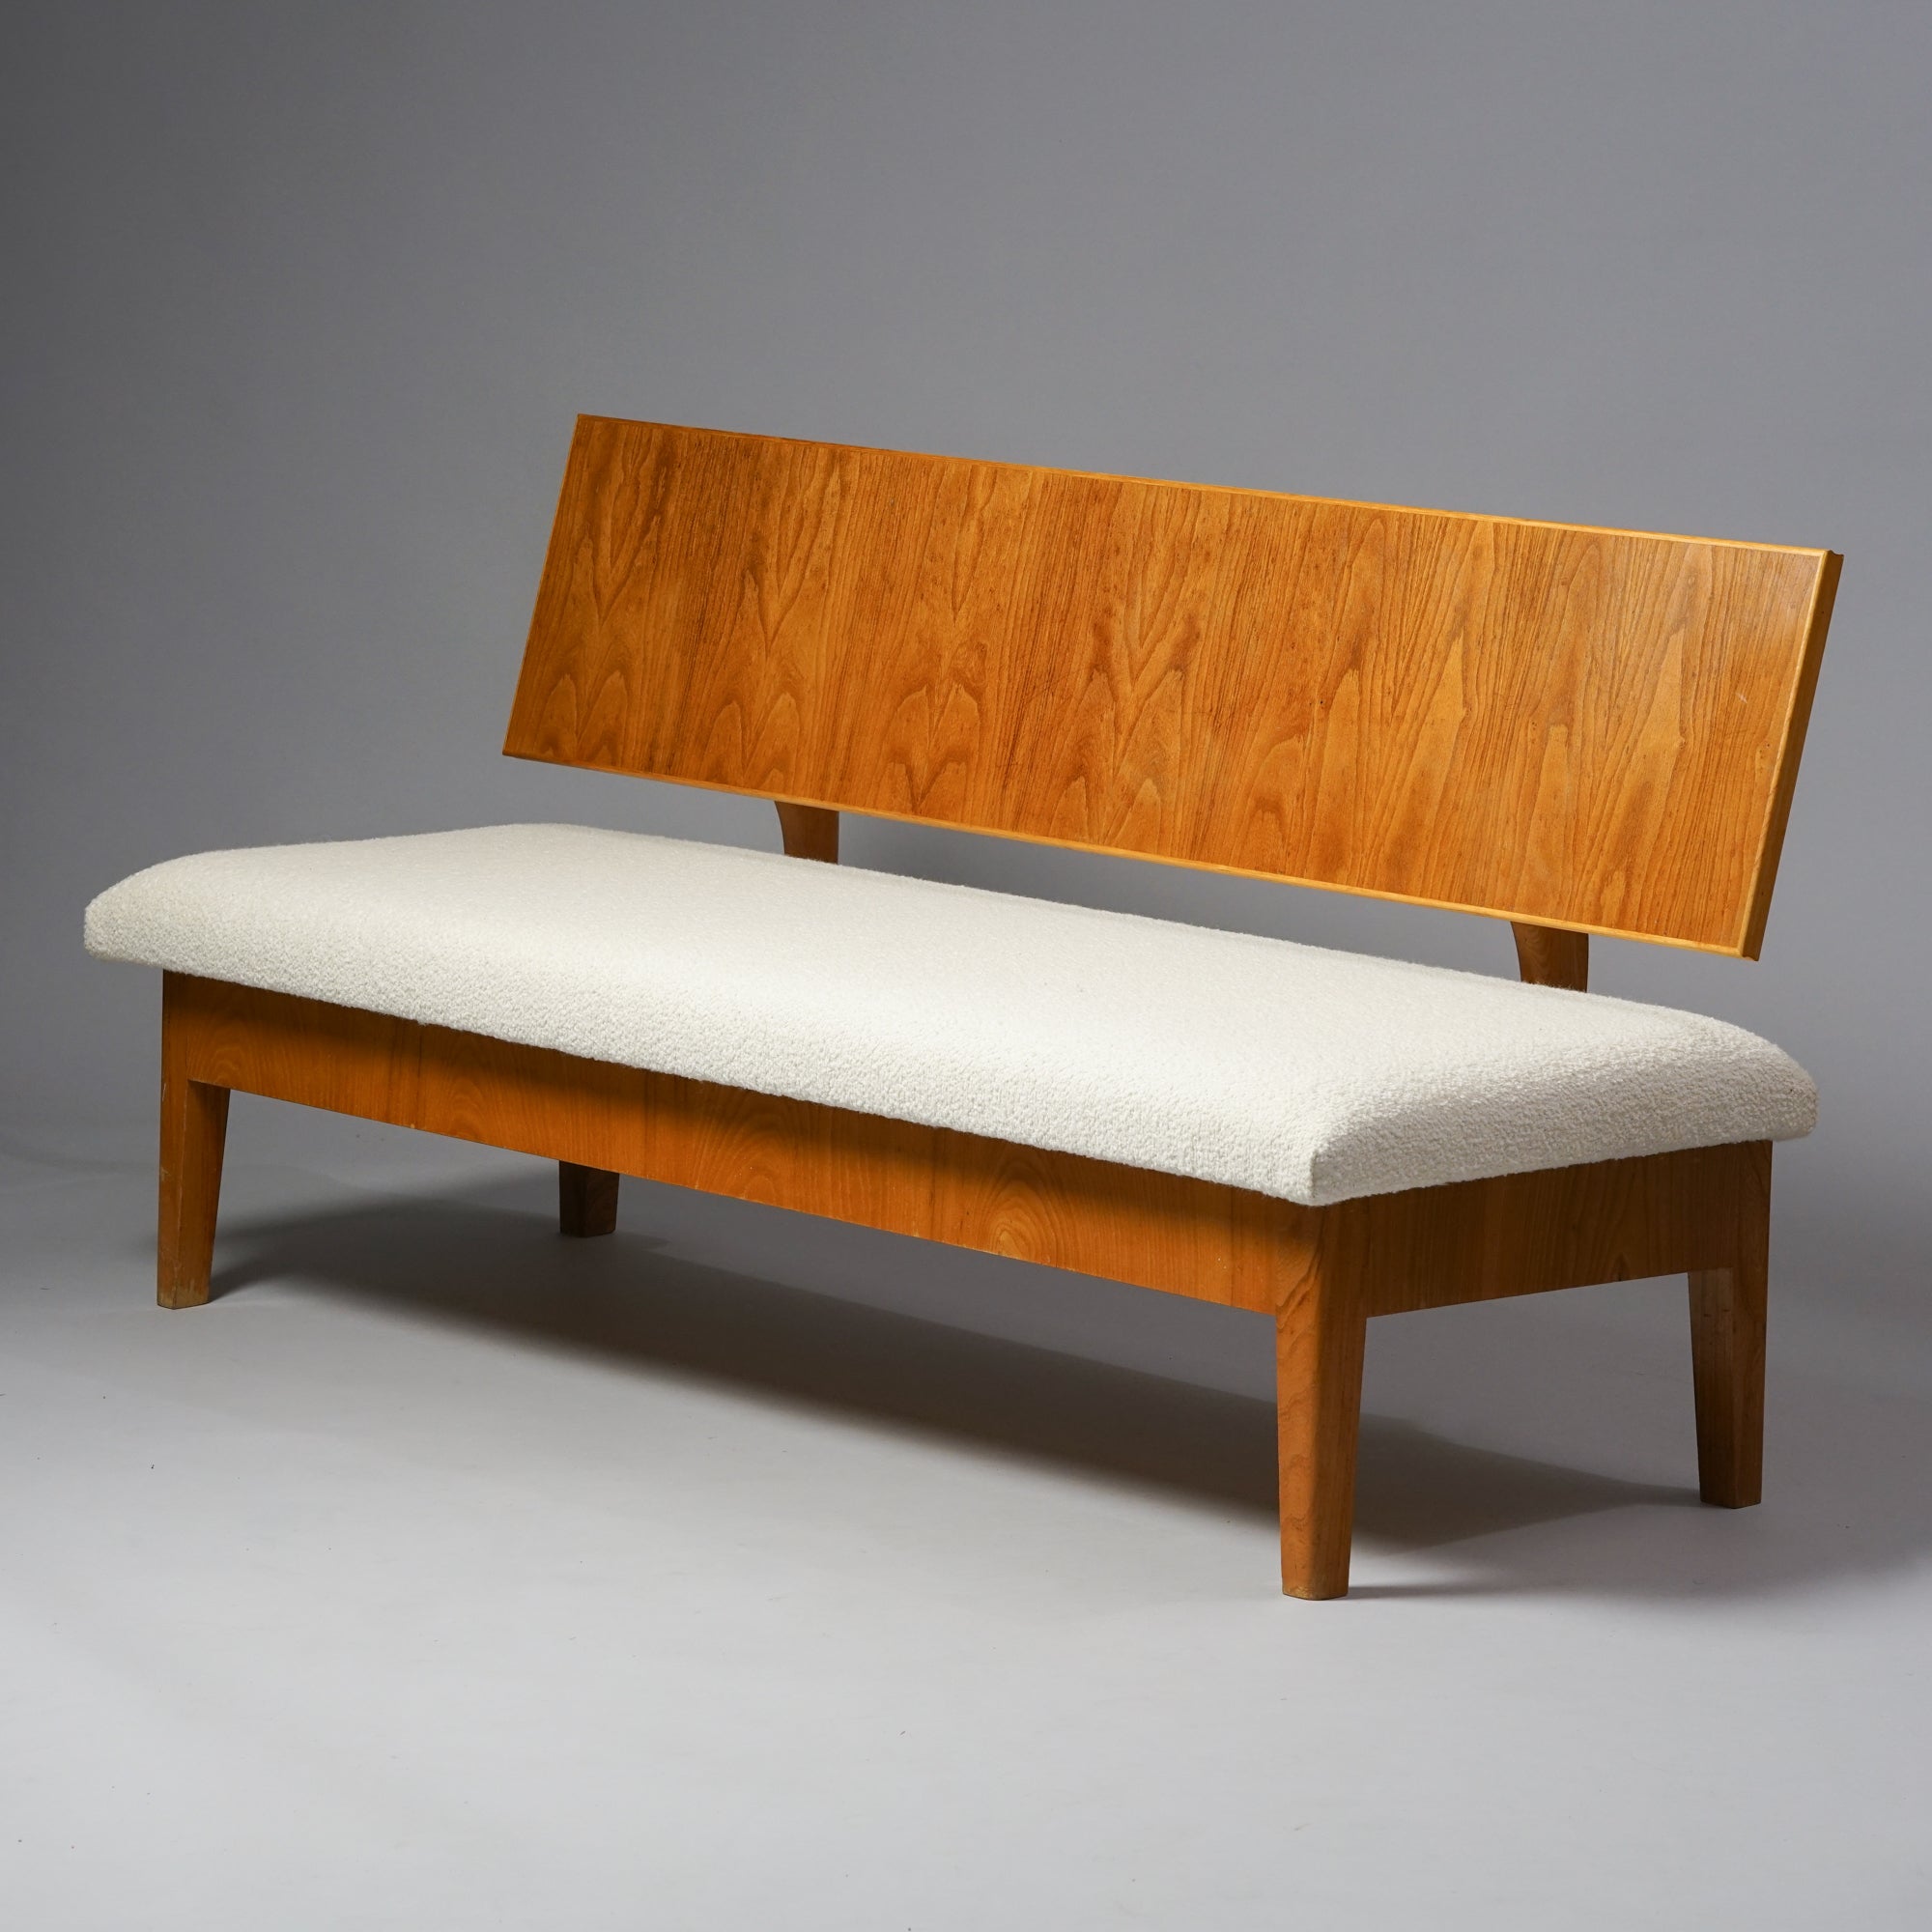 Puusta tehty sohva, jossa valkoinen kankaasta tehty istuin. Sohvan selkänoja on myös tehty puusta.